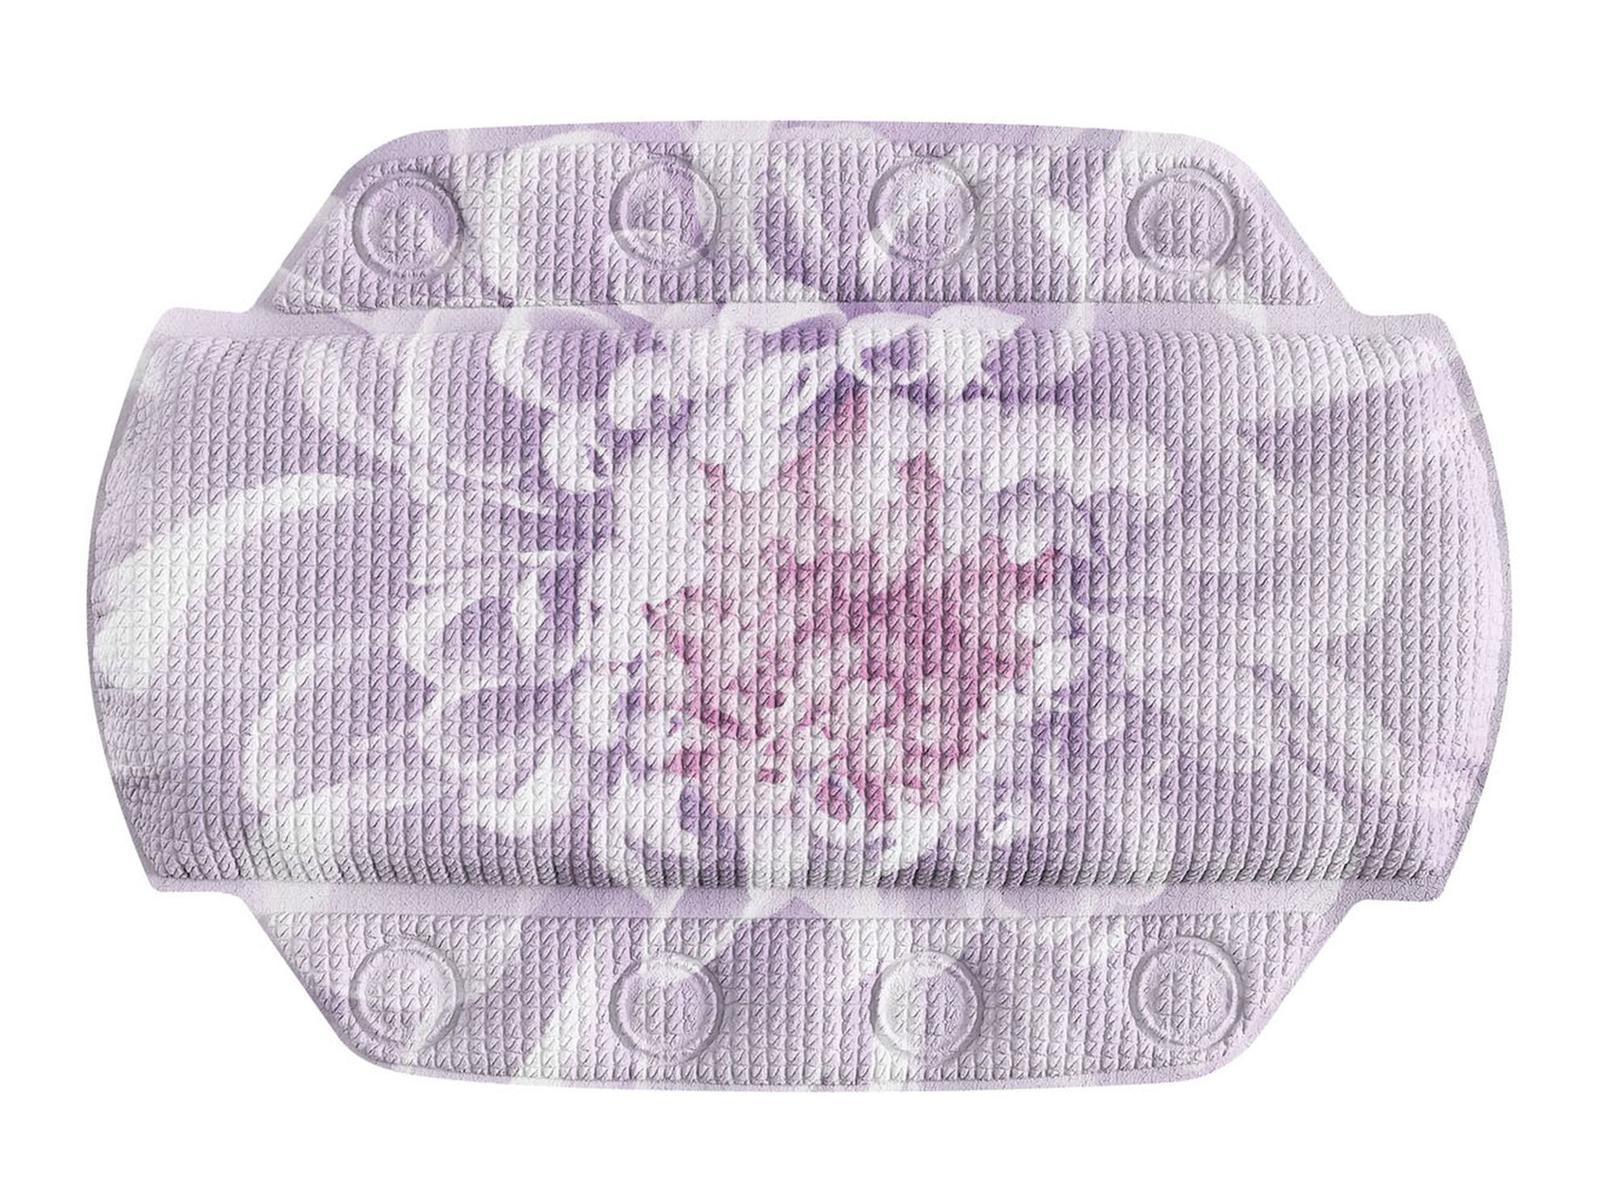 Zagłówek nawannowy 32x22 cm lavender fioletowy Kleine Wolke Dahlia do łazienki  nr. 1